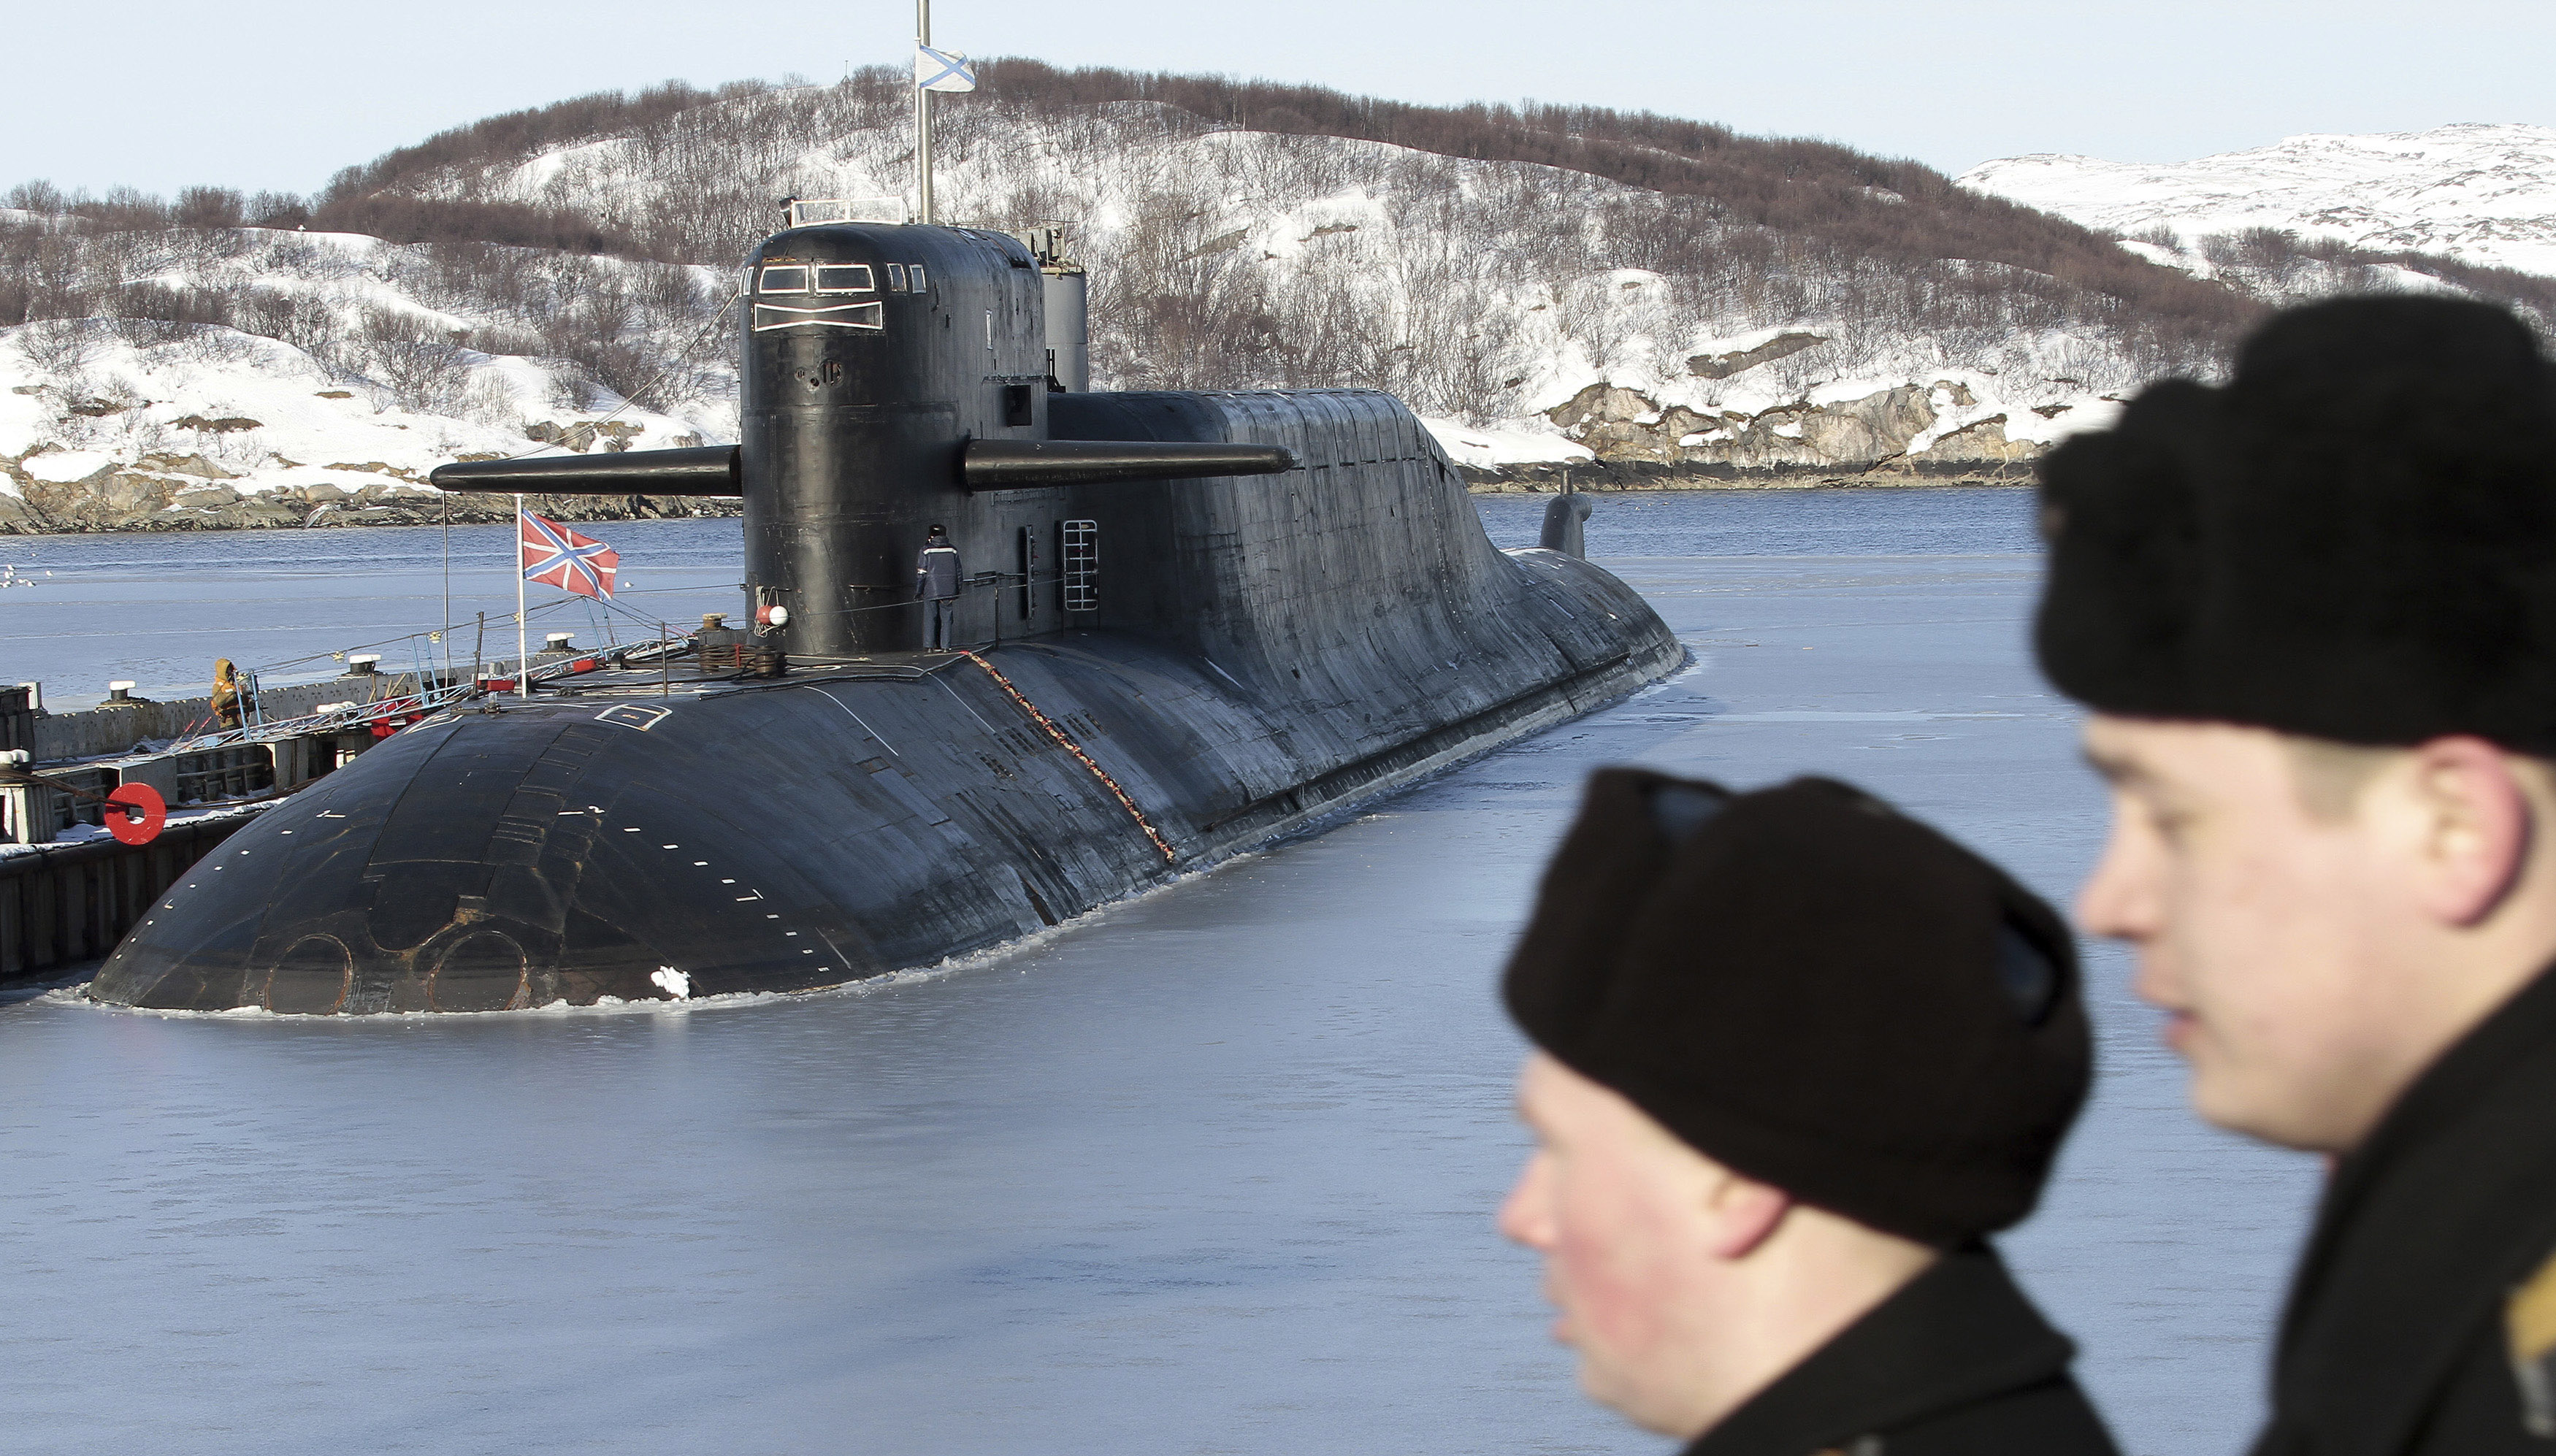 Tàu ngầm hạt nhân Yekaterinburg tại căn cứ hải quân vùng Murmansk - Ảnh: Reuters